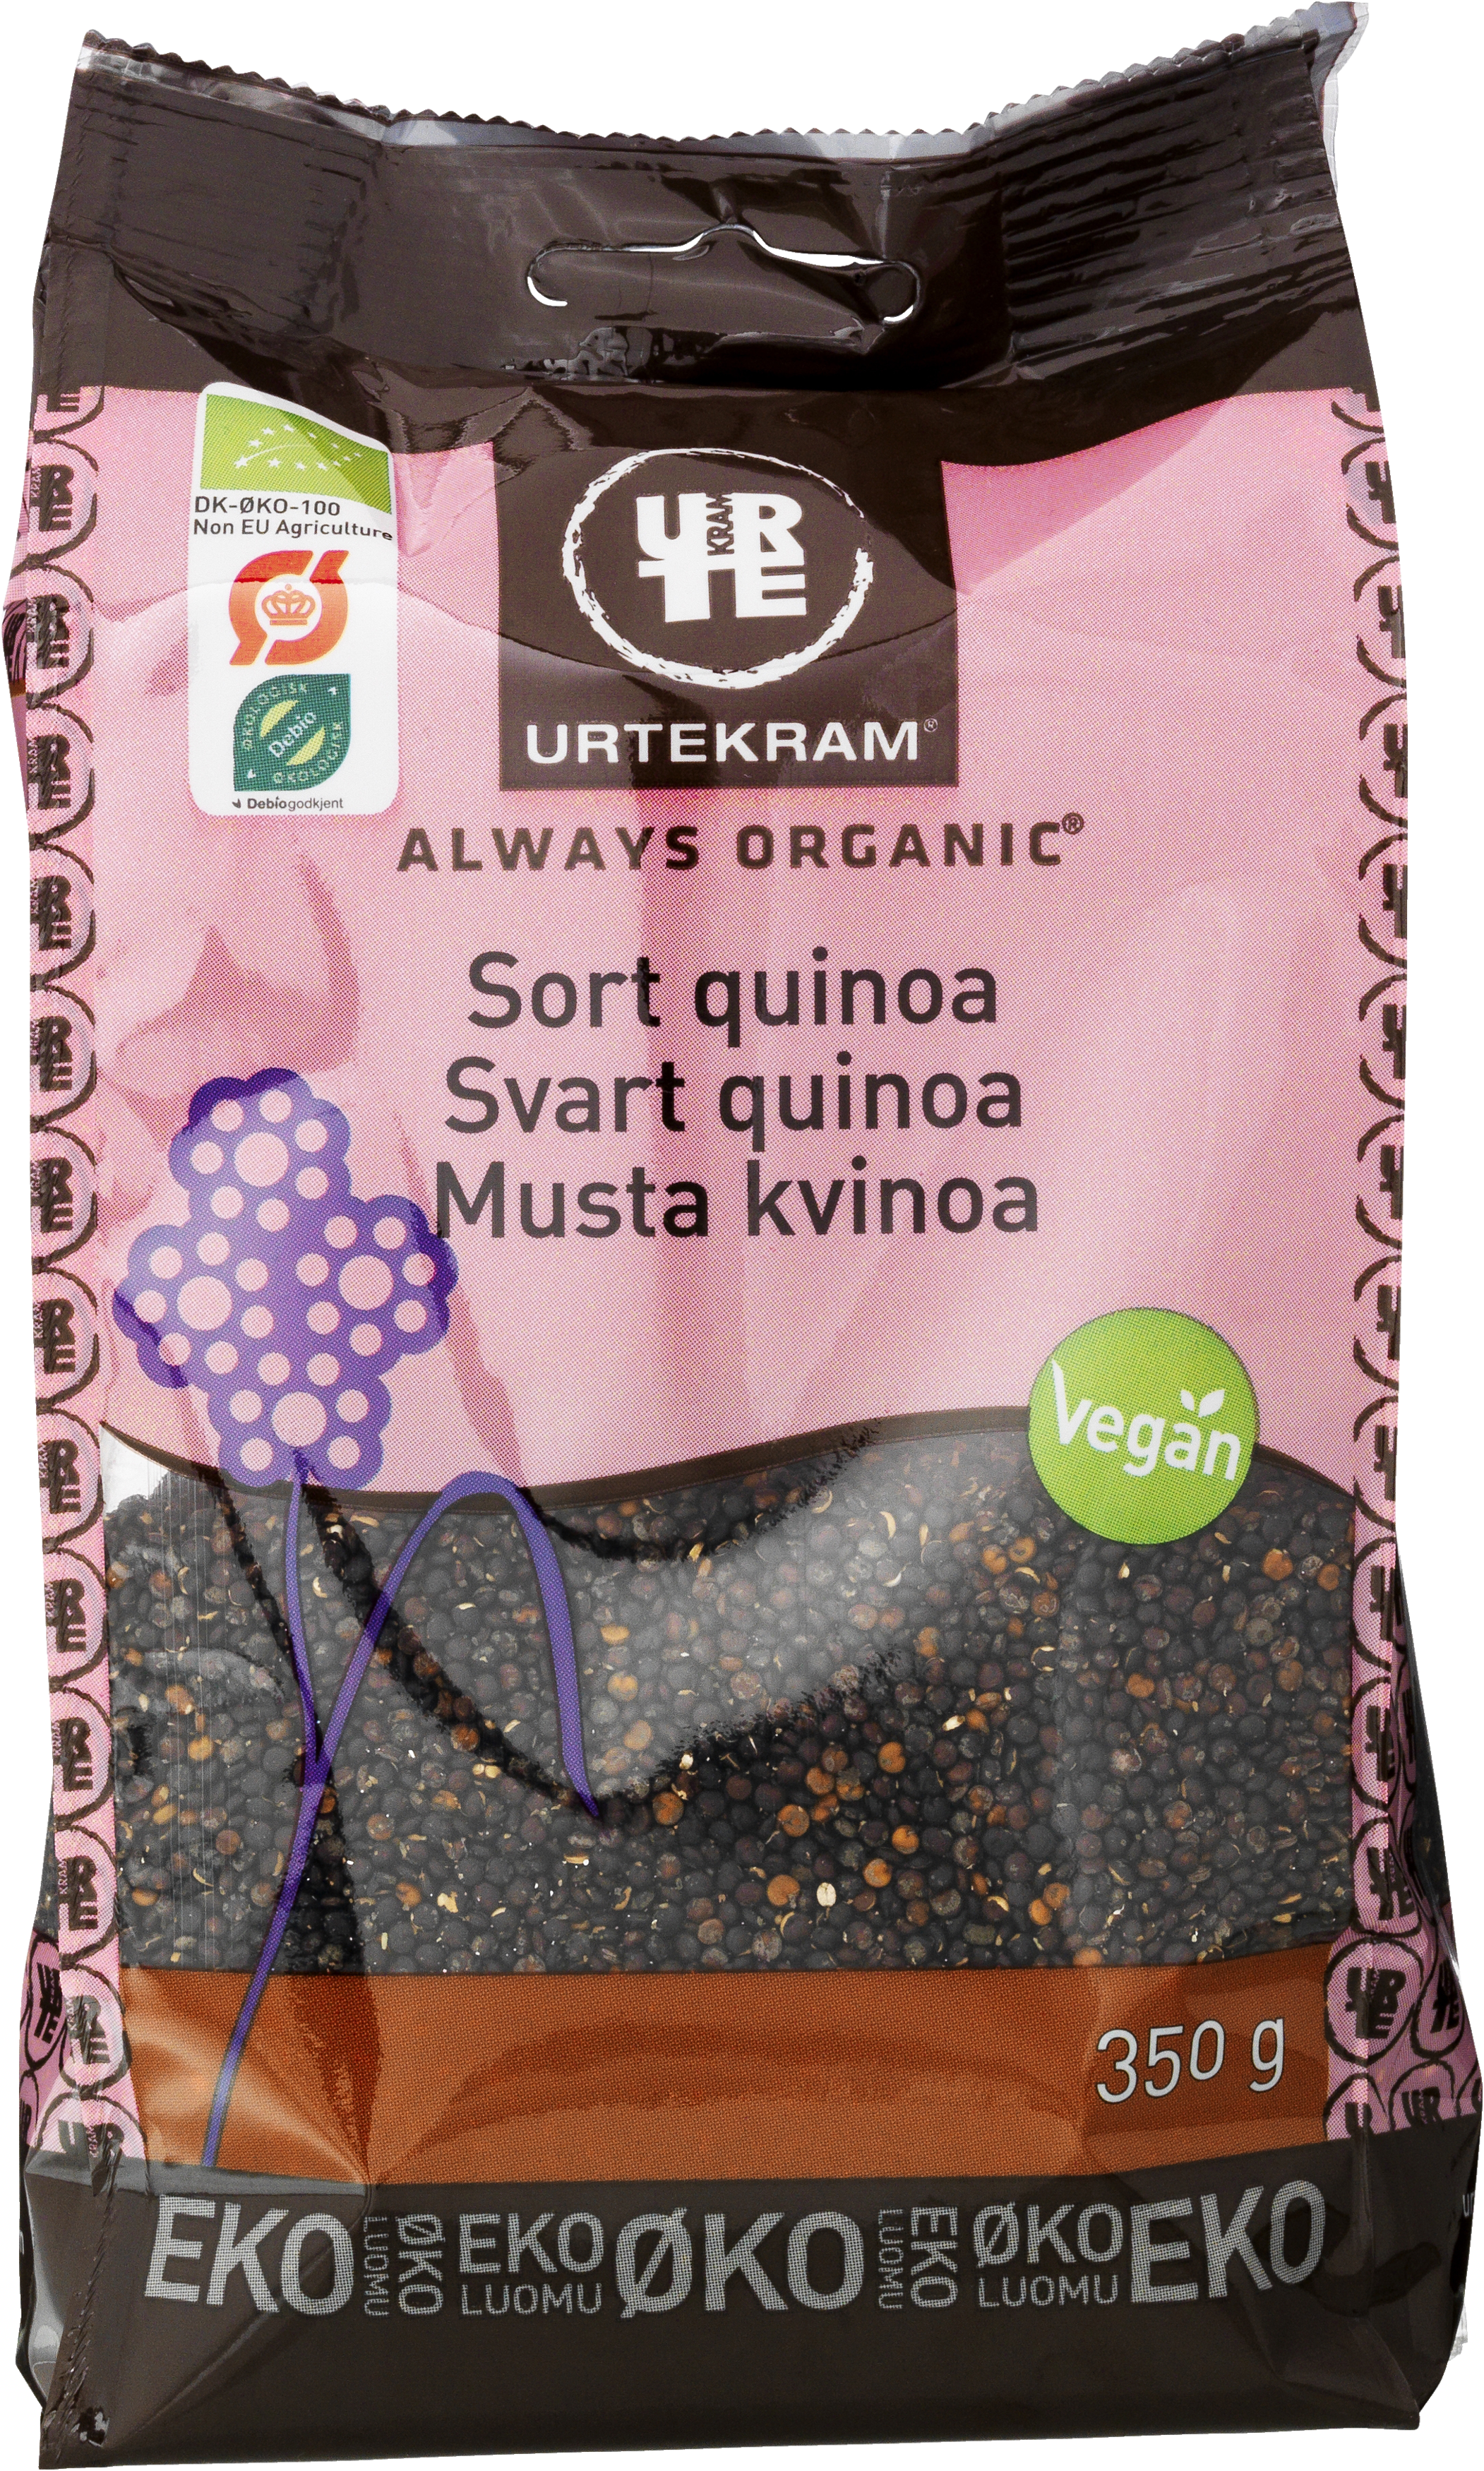 Musta kvinoa